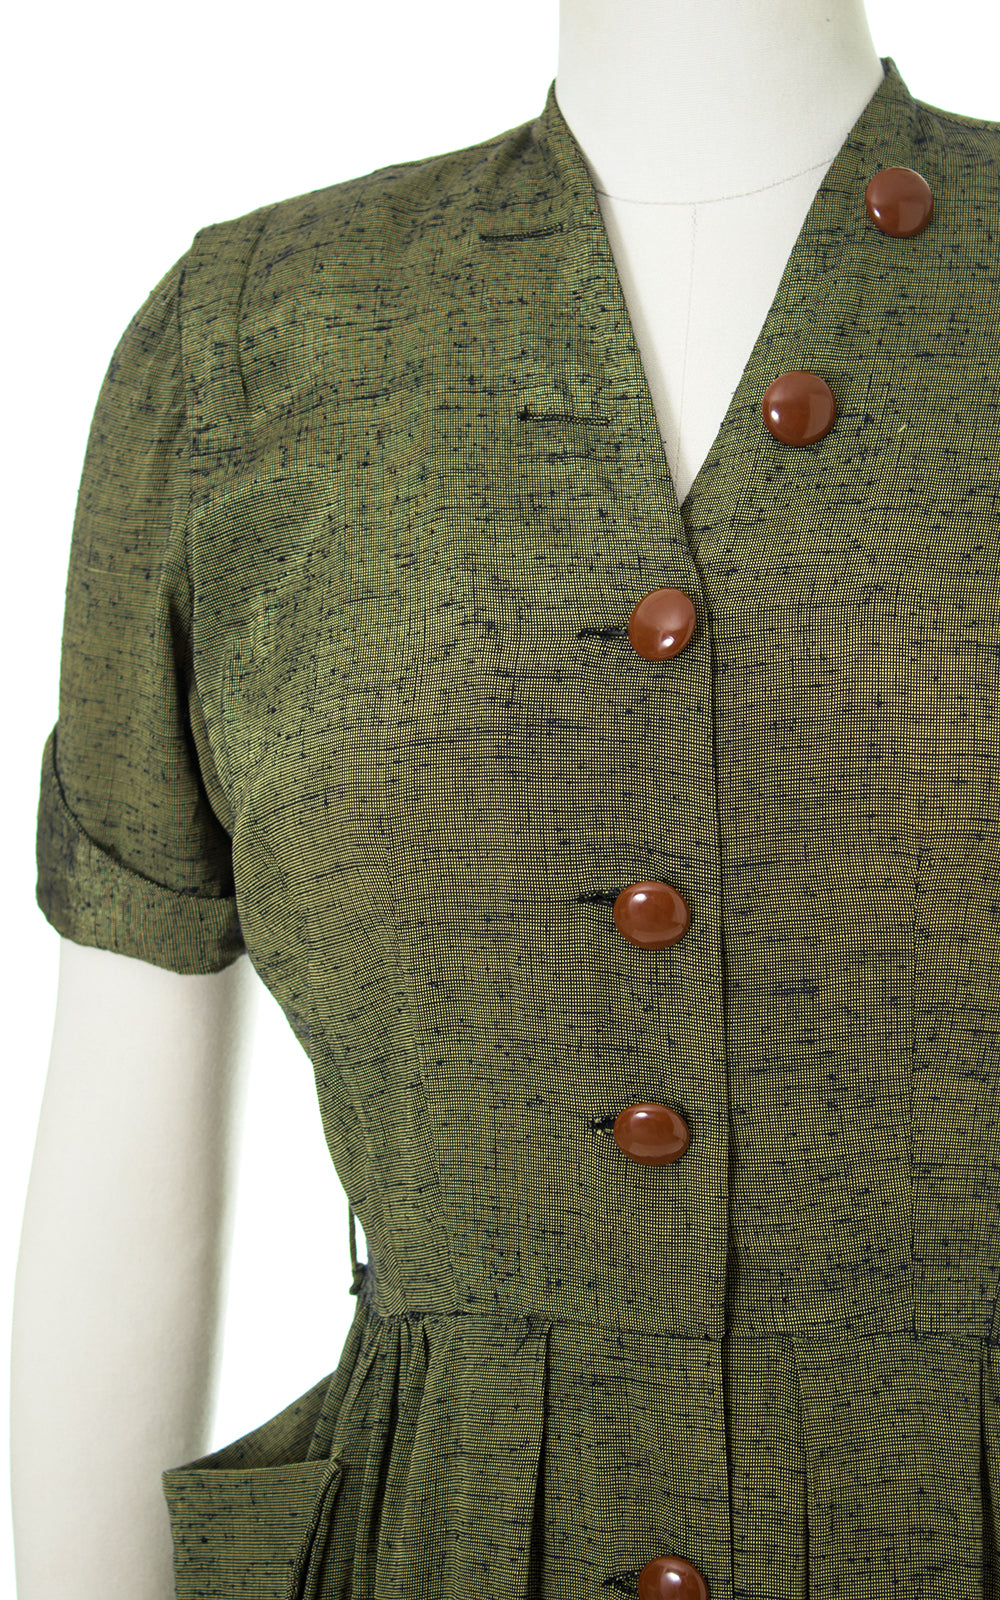 1940s 1950s Green Sharkskin Shirtwaist Dress